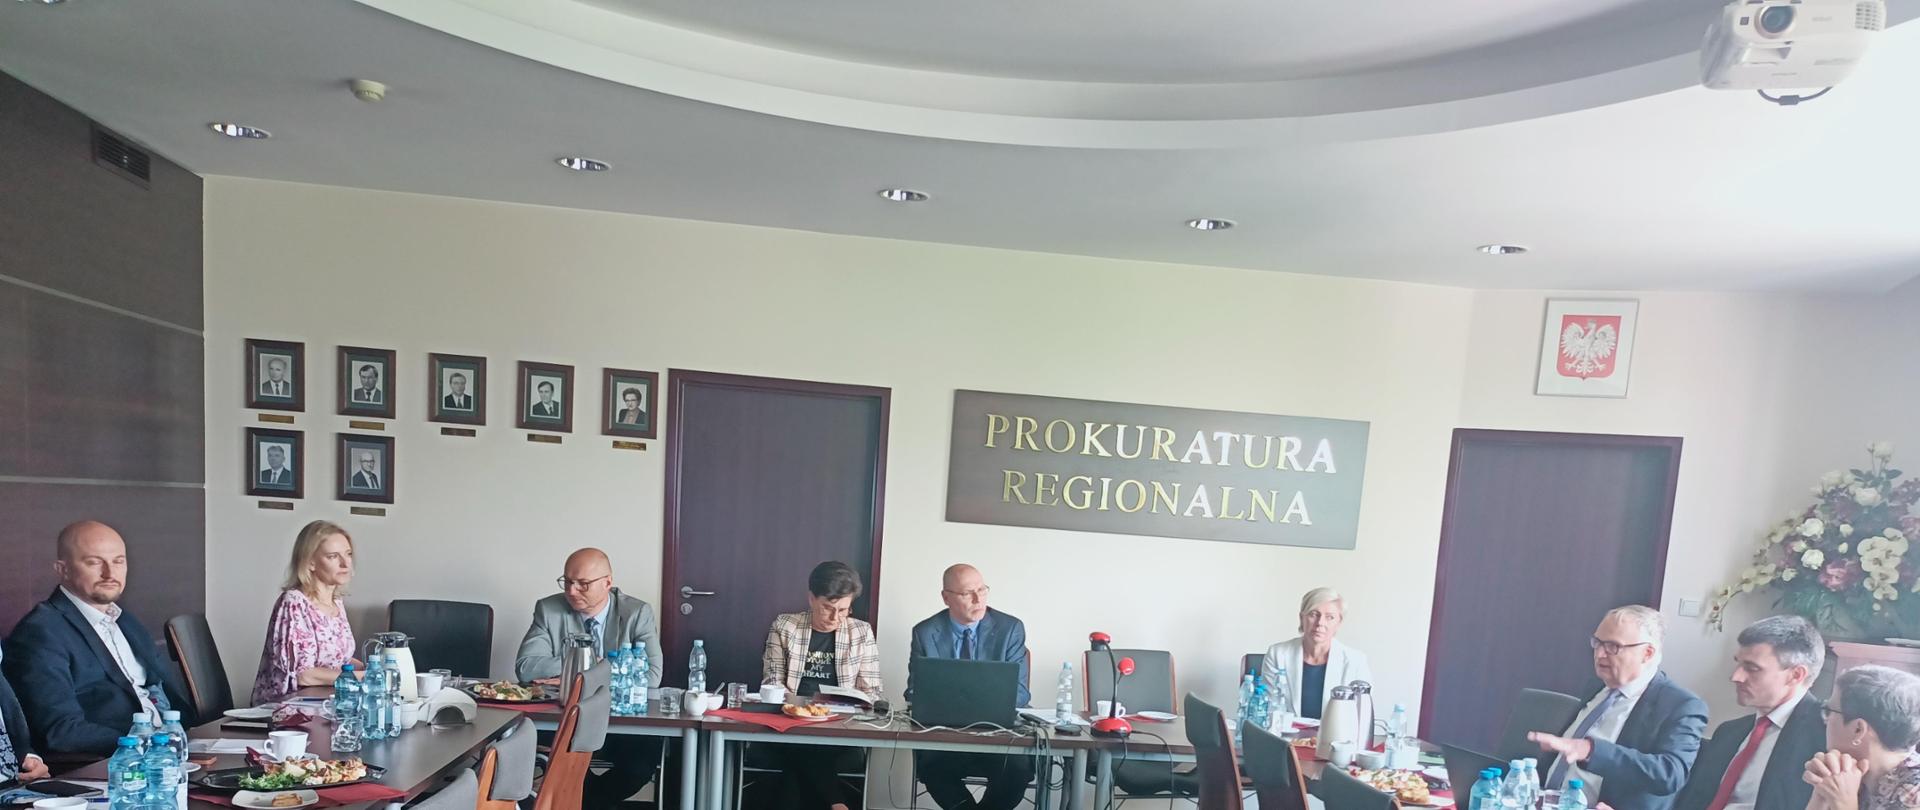 Wizyta delegacji prokuratorów z Prokuratury Generalnej w Dreźnie w Poznaniu